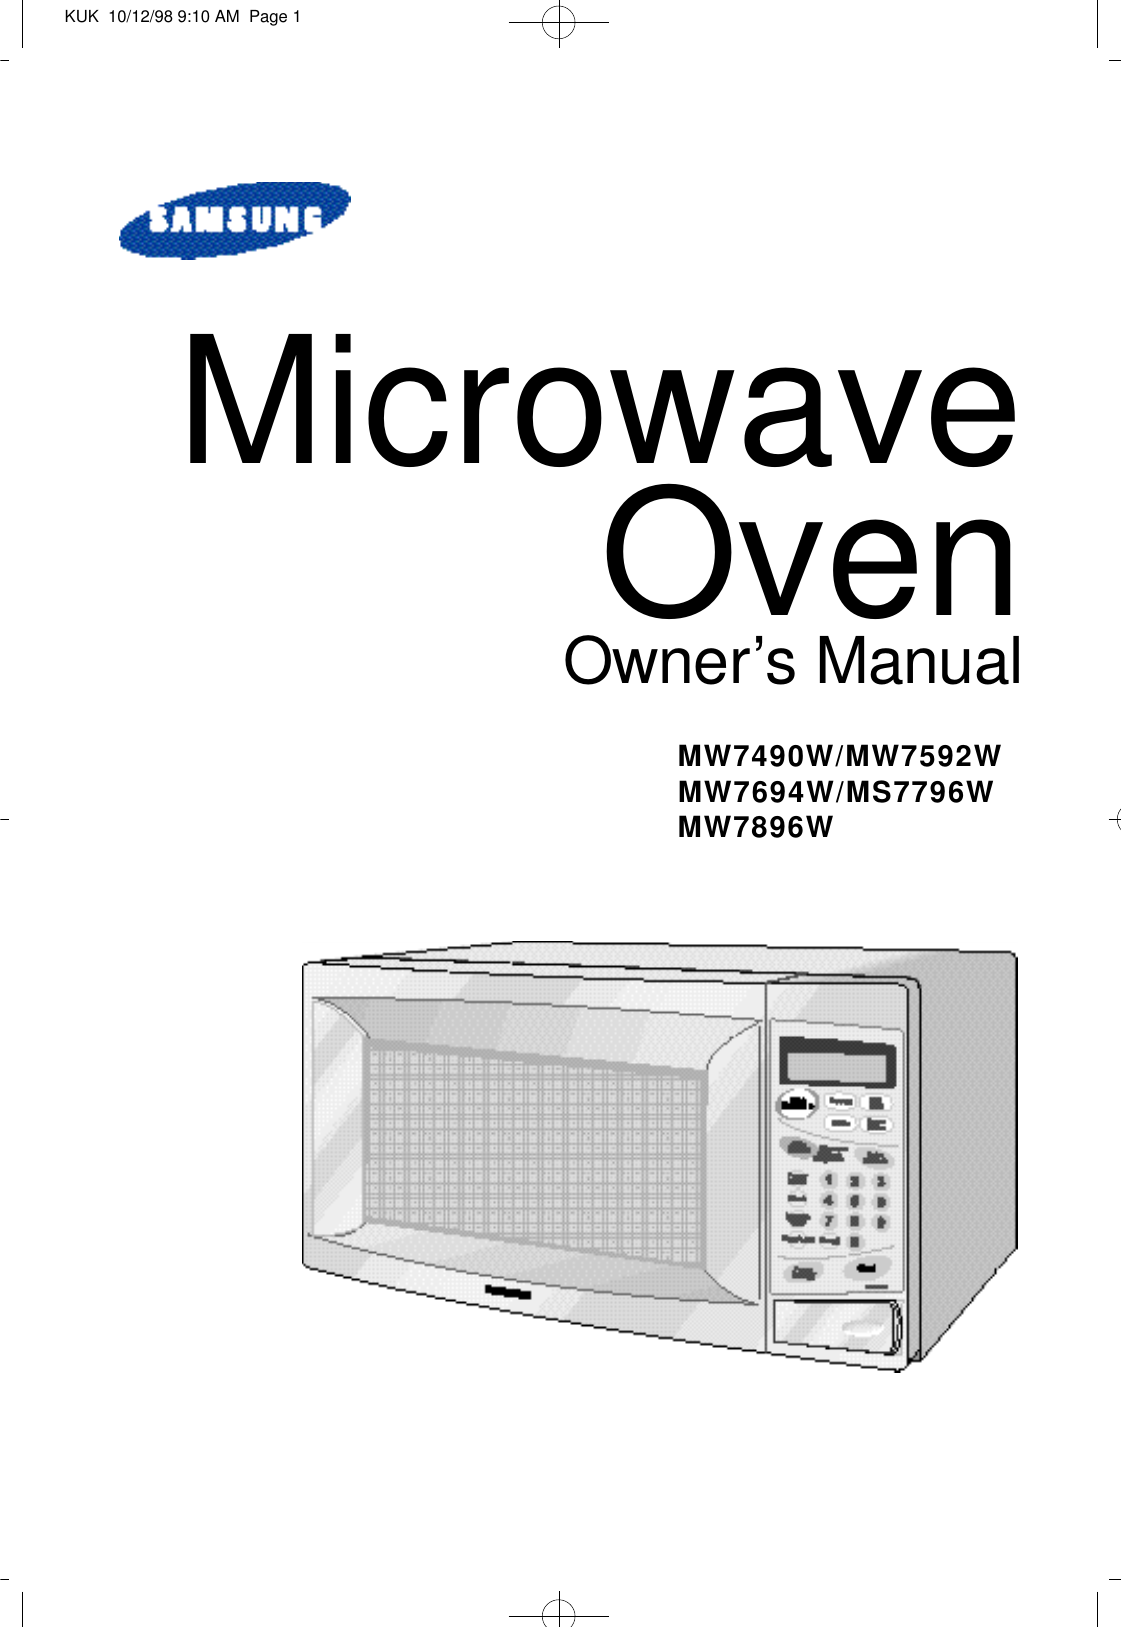 Microwave OvenO w n e r’s ManualM W 7 4 9 0 W / M W 7 5 9 2 WM W 7 6 9 4 W / M S 7 7 9 6 WM W 7 8 9 6 WKUK  10/12/98 9:10 AM  Page 1